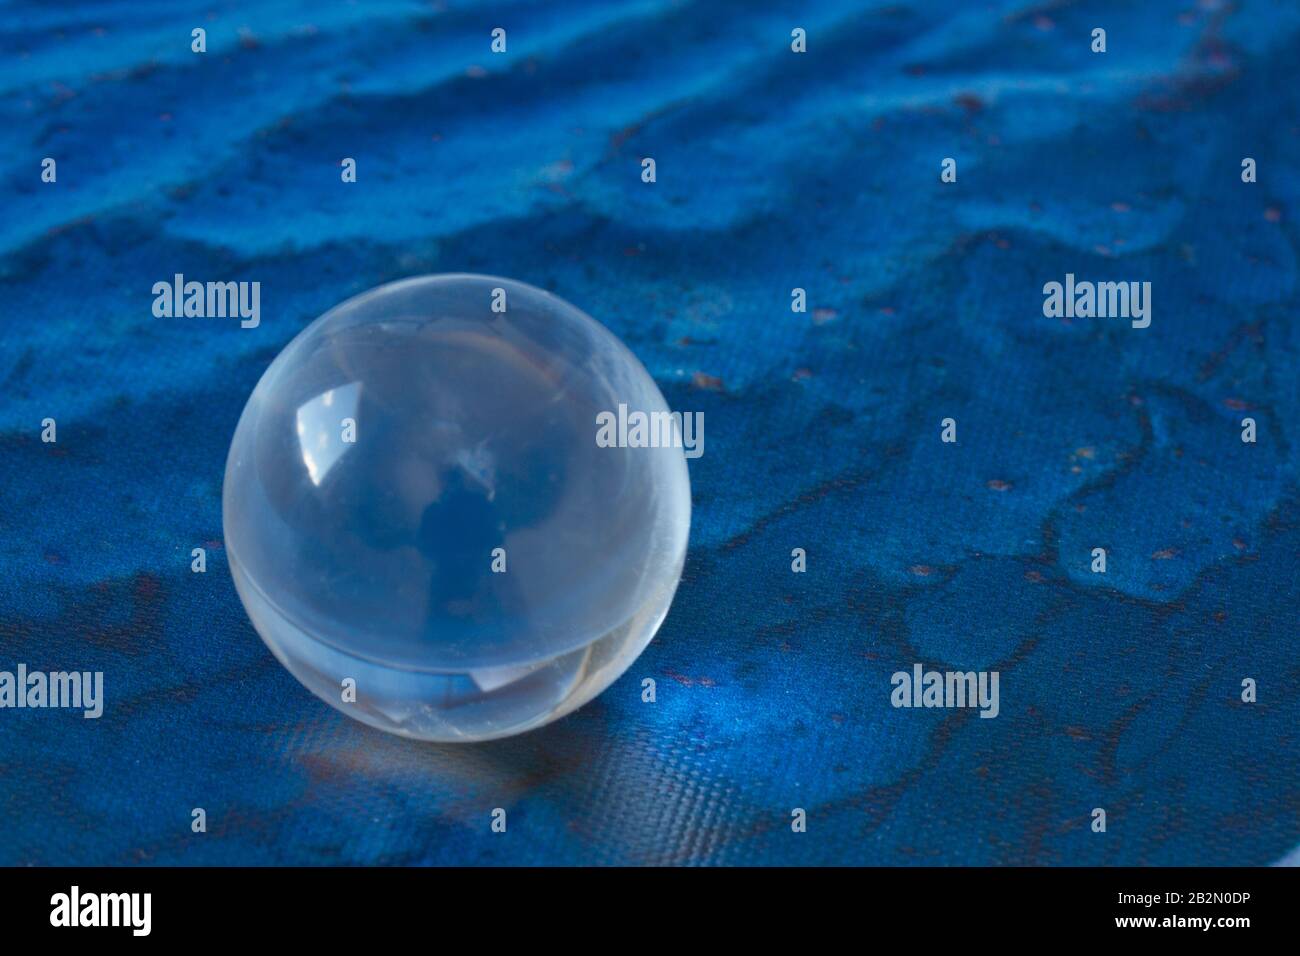 Kristallkugel auf classic blue Hintergrund Stock Photo